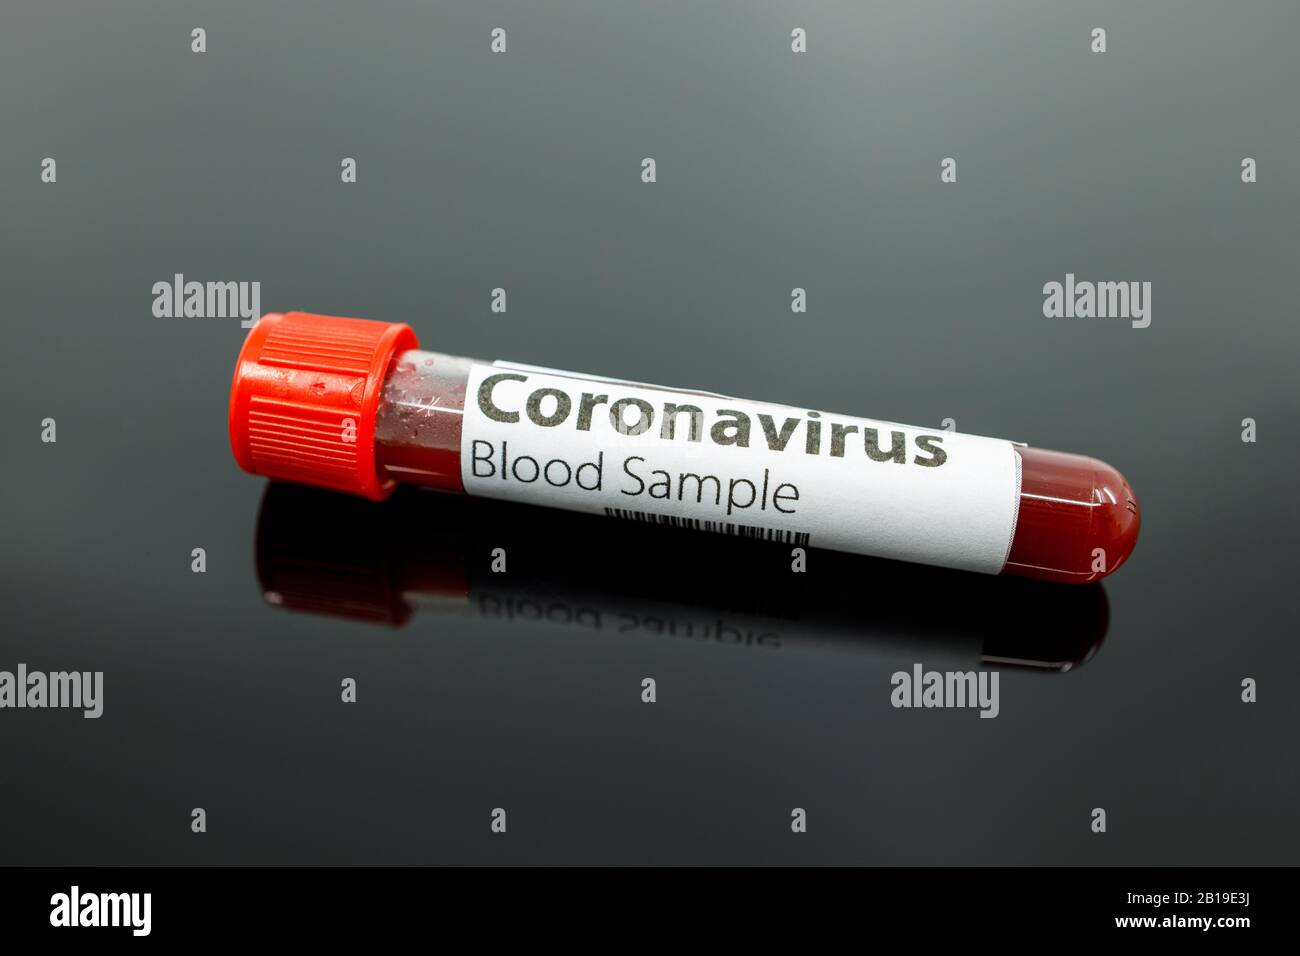 Reagenzglas mit Blutprobe für das neue, sich schnell ausbreitende Coronavirus, das seinen Ursprung in Wuhan, China hat. Bluttestschlauch Coronavirus auf schwarzem Grund Stockfoto